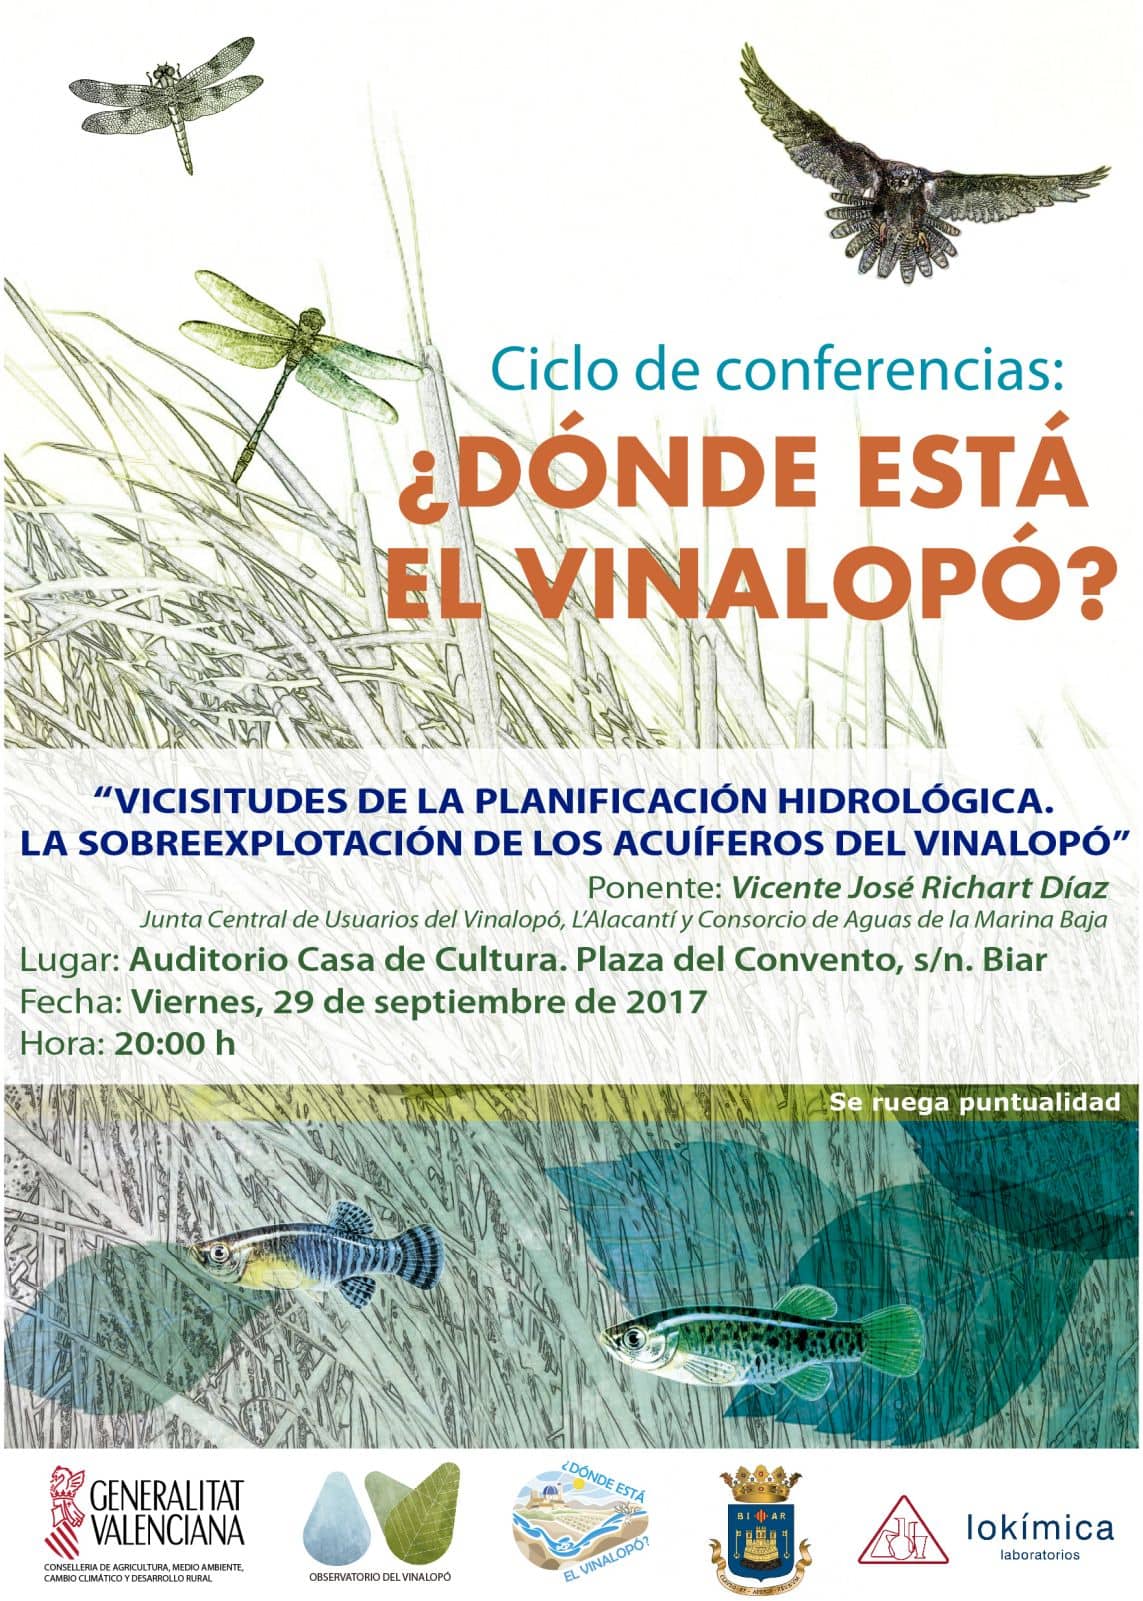 El Observatorio del Vinalopó organiza en Biar una conferencia sobre la sobreexplotación de los acuíferos del Vinalopó